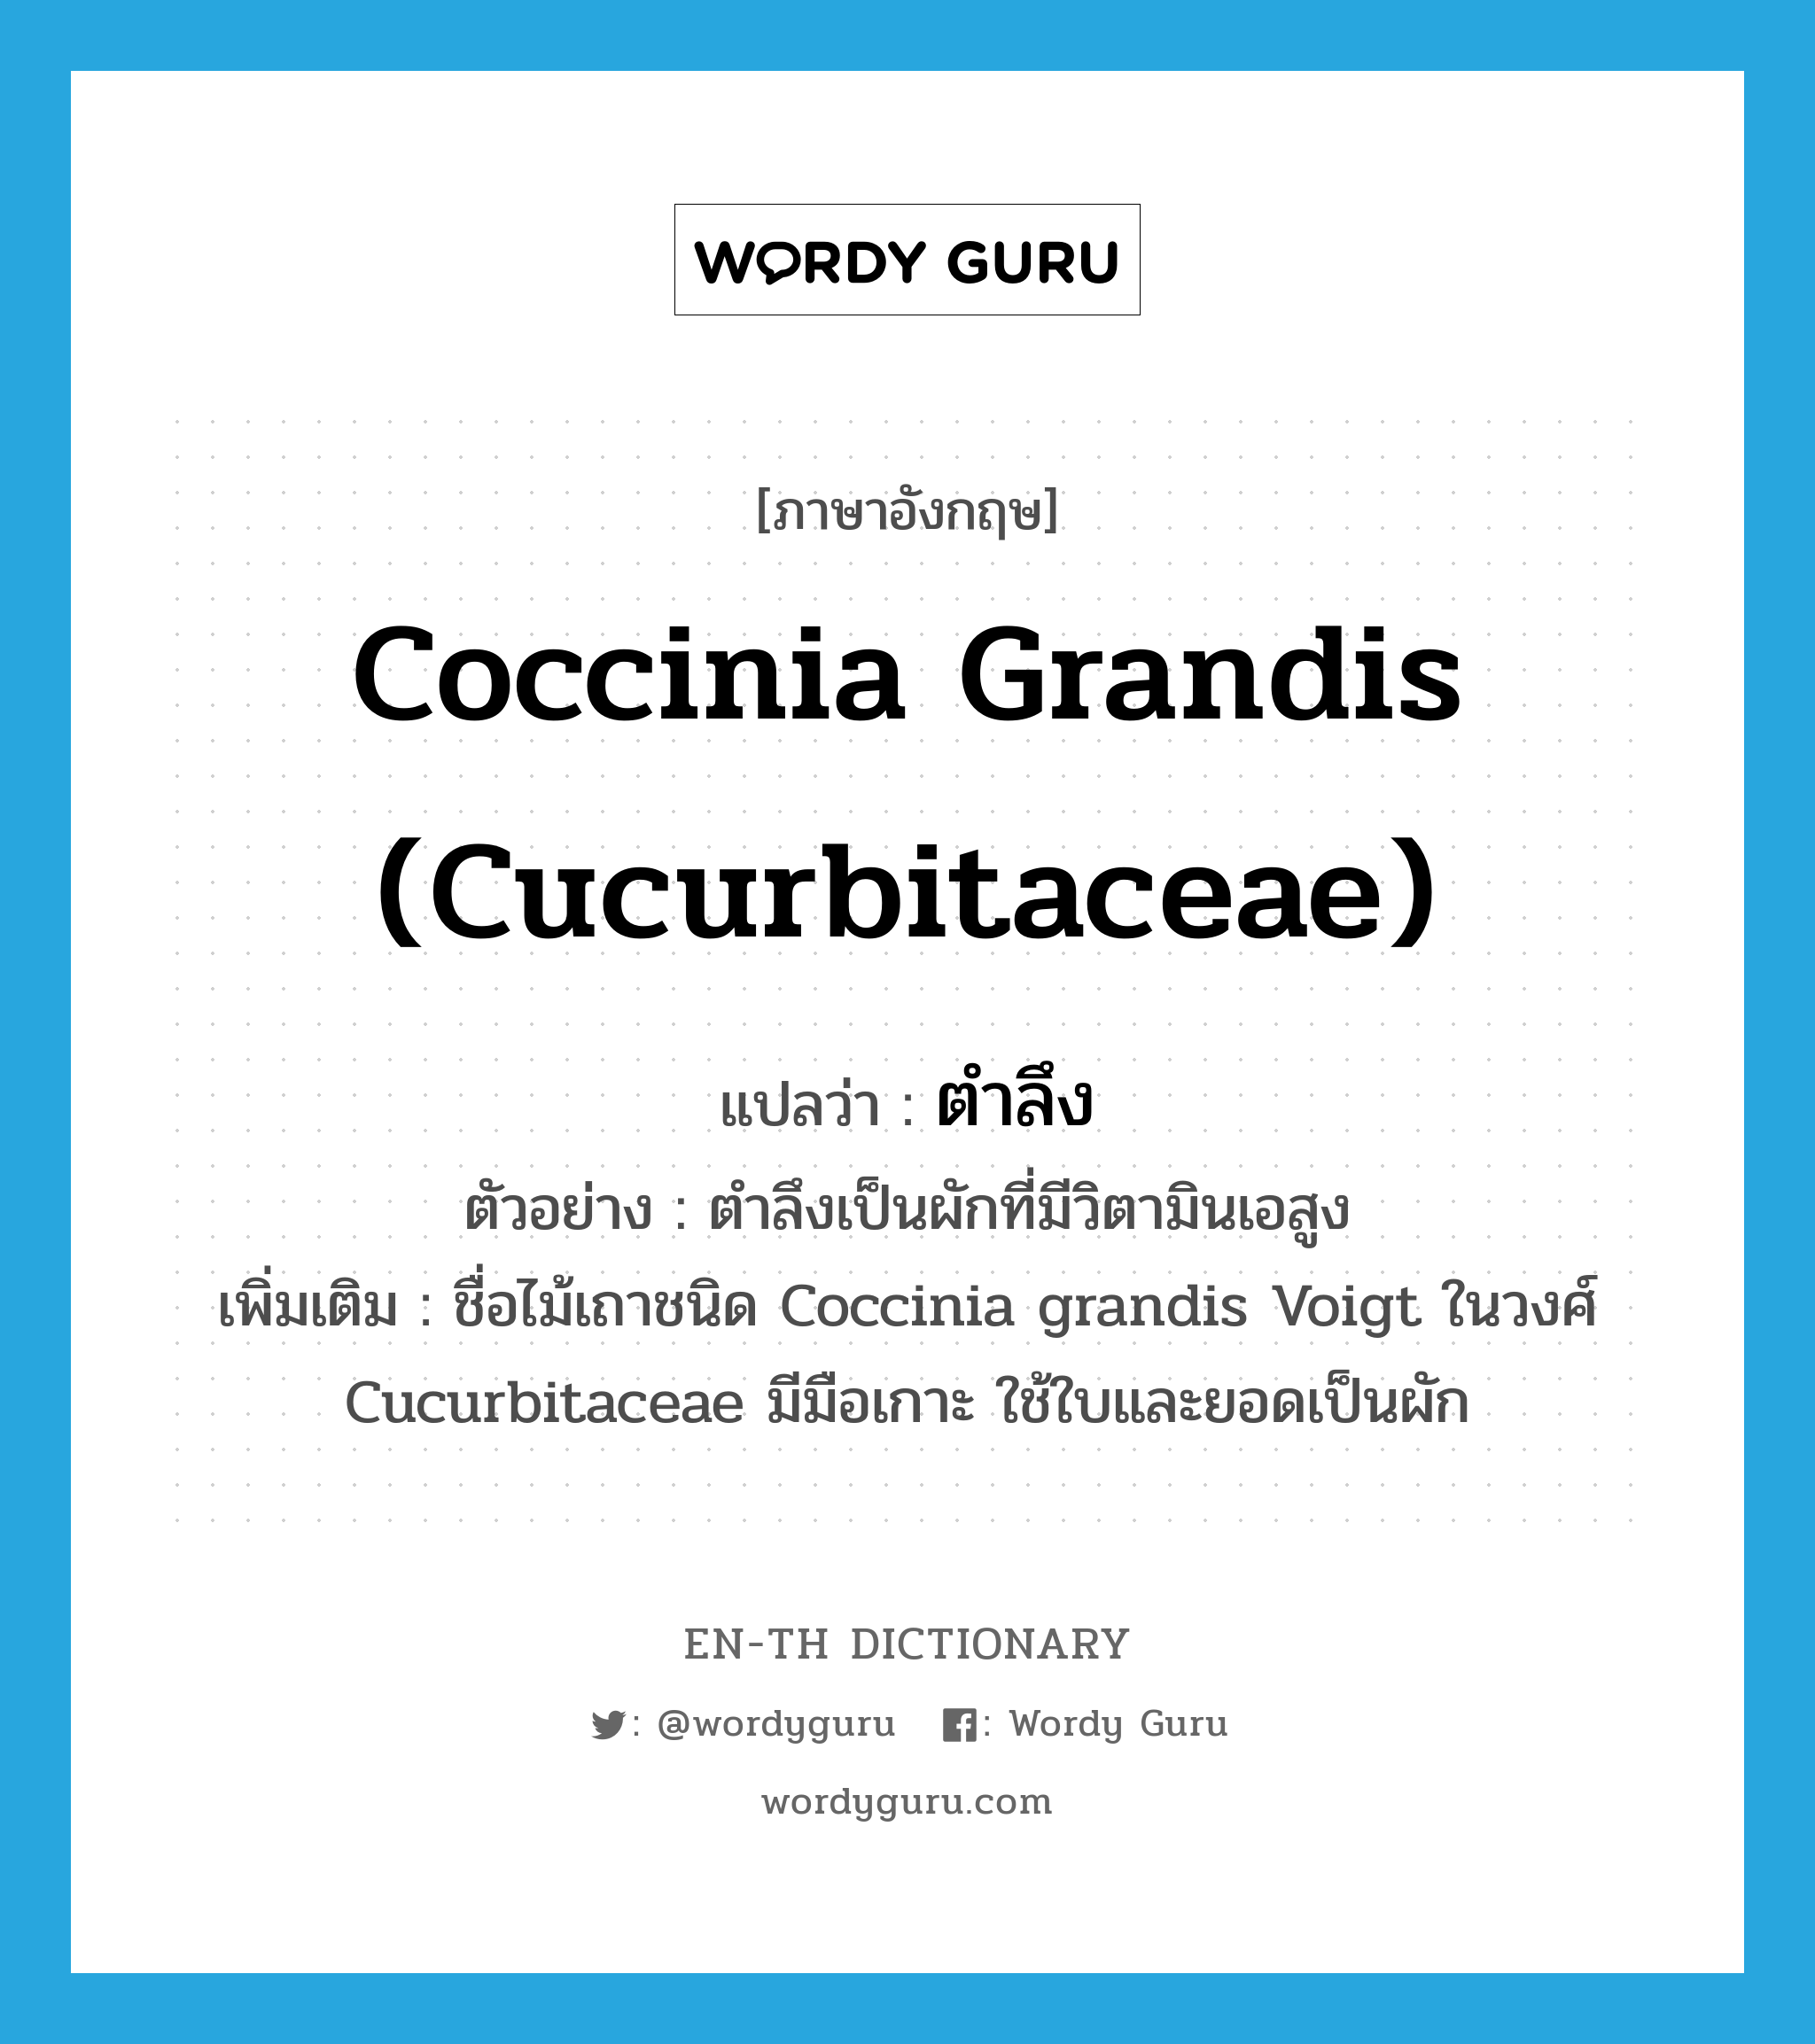 ตำลึง ภาษาอังกฤษ?, คำศัพท์ภาษาอังกฤษ ตำลึง แปลว่า Coccinia grandis (Cucurbitaceae) ประเภท N ตัวอย่าง ตำลึงเป็นผักที่มีวิตามินเอสูง เพิ่มเติม ชื่อไม้เถาชนิด Coccinia grandis Voigt ในวงศ์ Cucurbitaceae มีมือเกาะ ใช้ใบและยอดเป็นผัก หมวด N